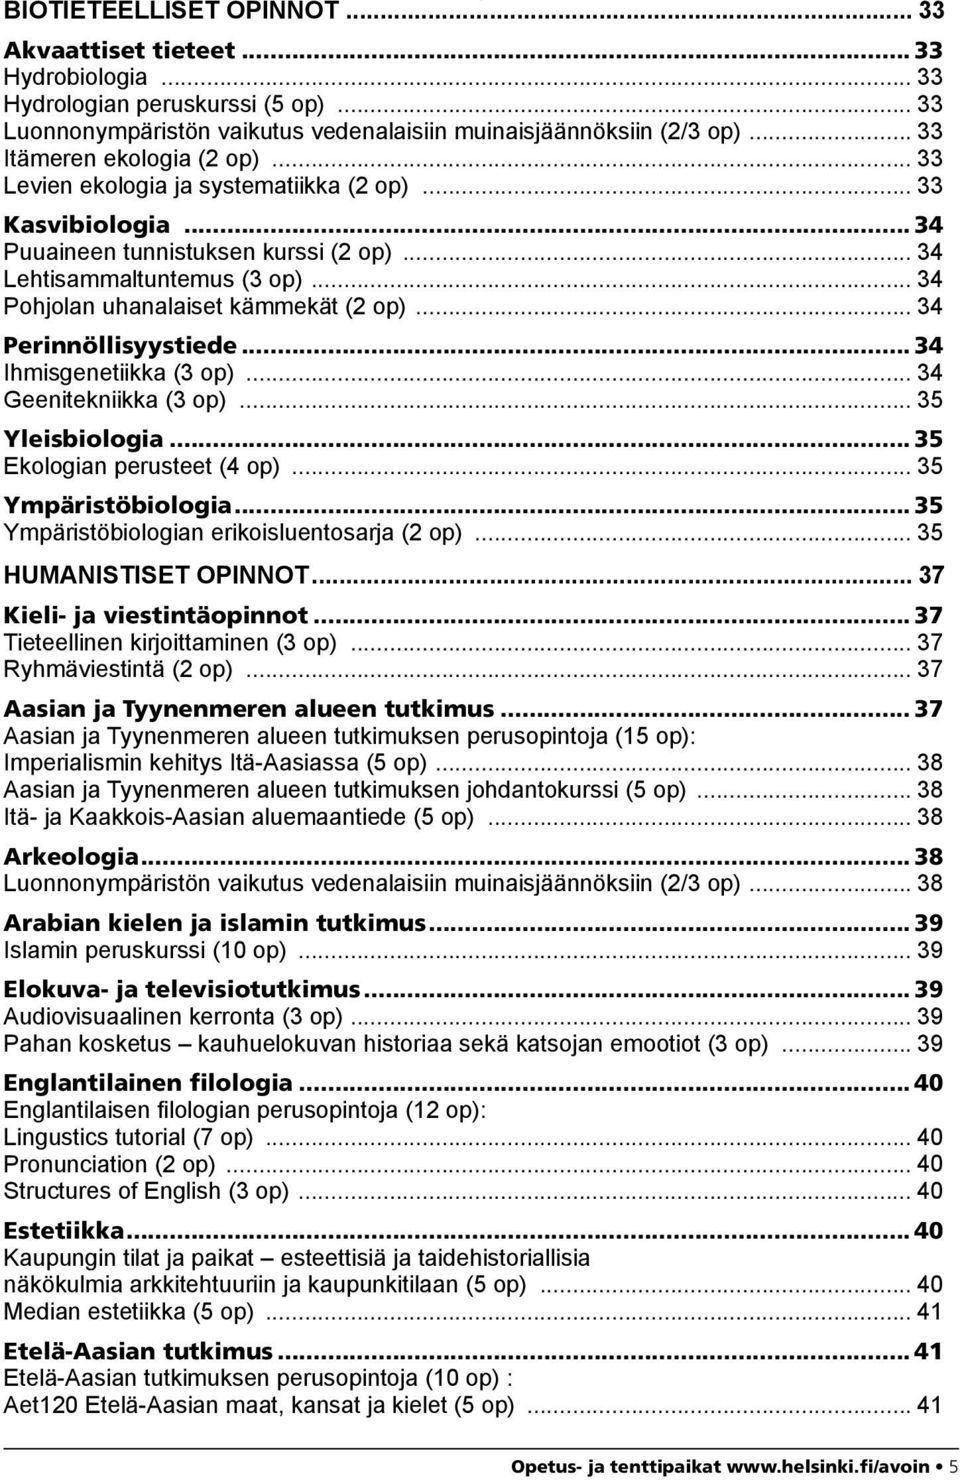 .. 34 Pohjolan uhanalaiset kämmekät (2 op)... 34 Perinnöllisyystiede... 34 Ihmisgenetiikka (3 op)... 34 Geenitekniikka (3 op)... 35 Yleisbiologia... 35 Ekologian perusteet (4 op).